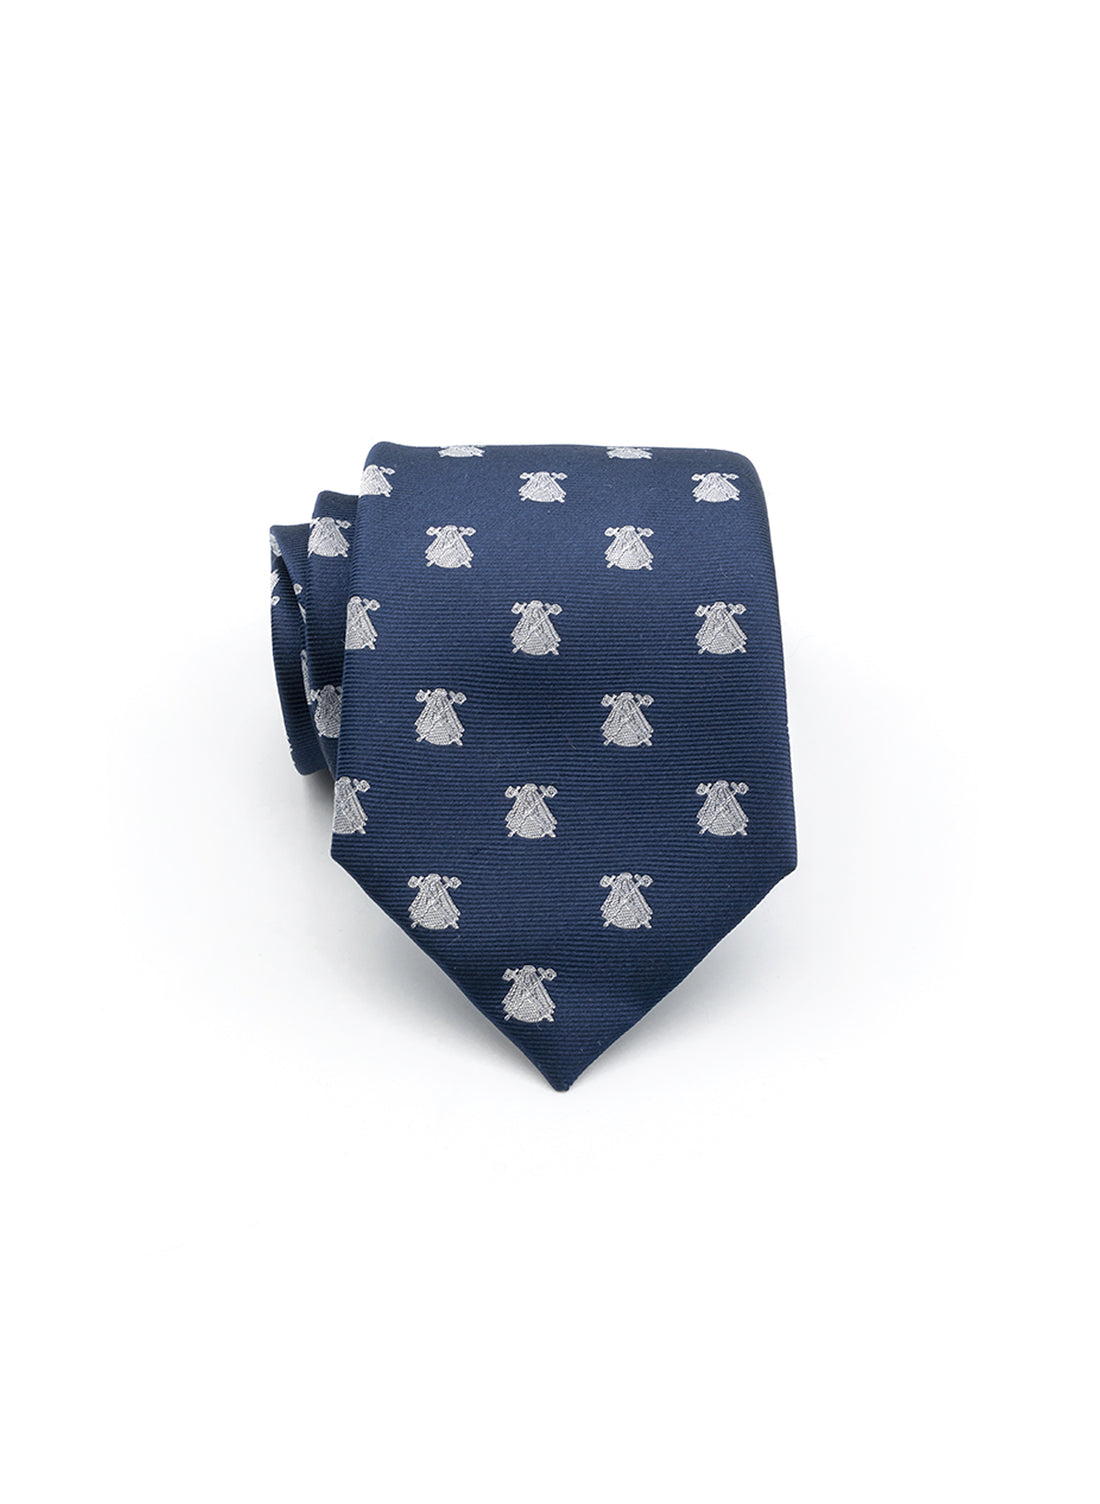 Cravate Bleu Marine Logos Blancs